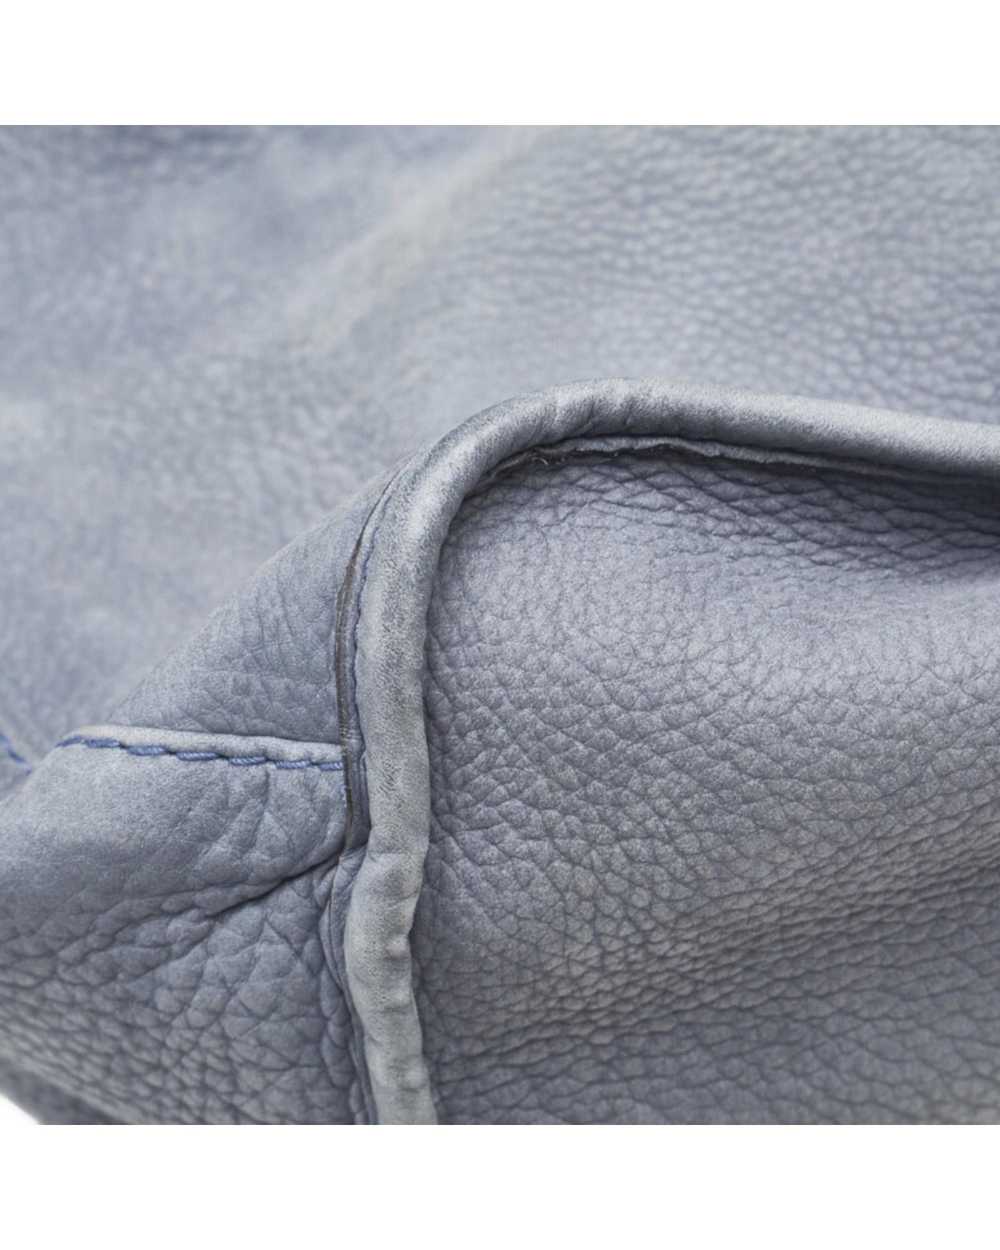 Gucci Luxury Soft Leather Shoulder Bag - image 5